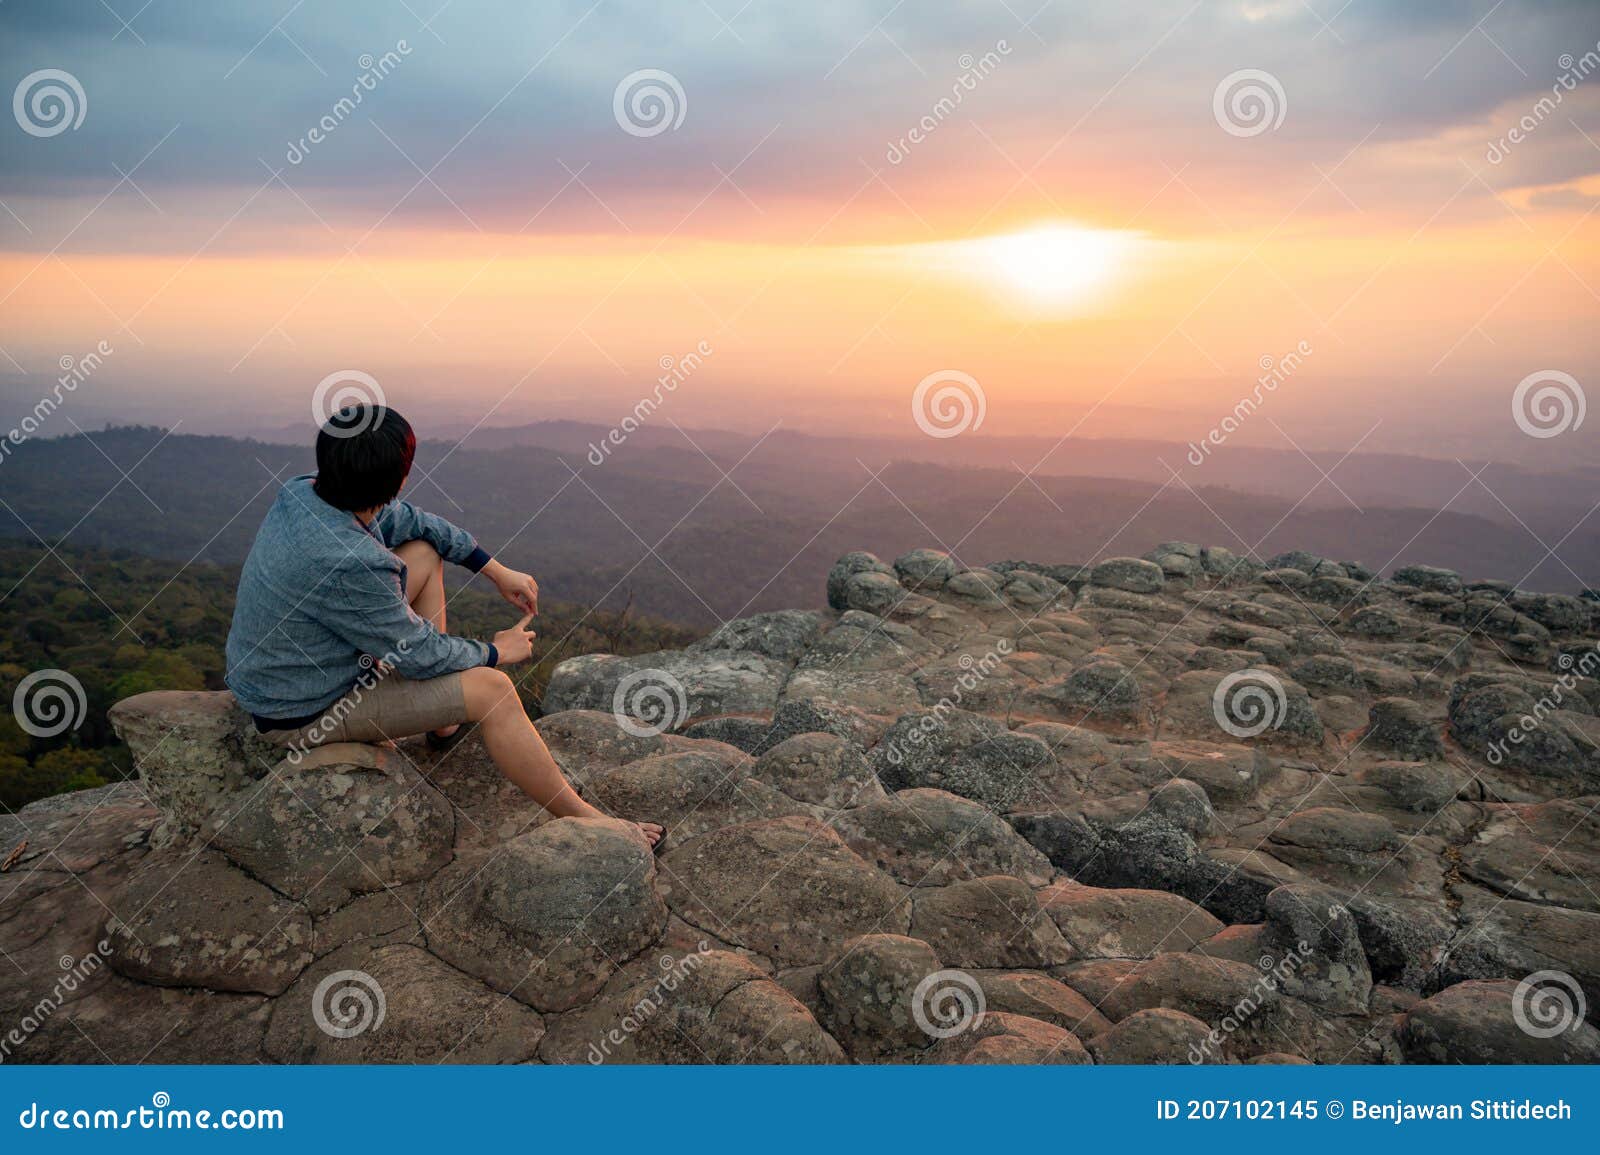 asian man sitting on nodule rock field enjoy looking sunset